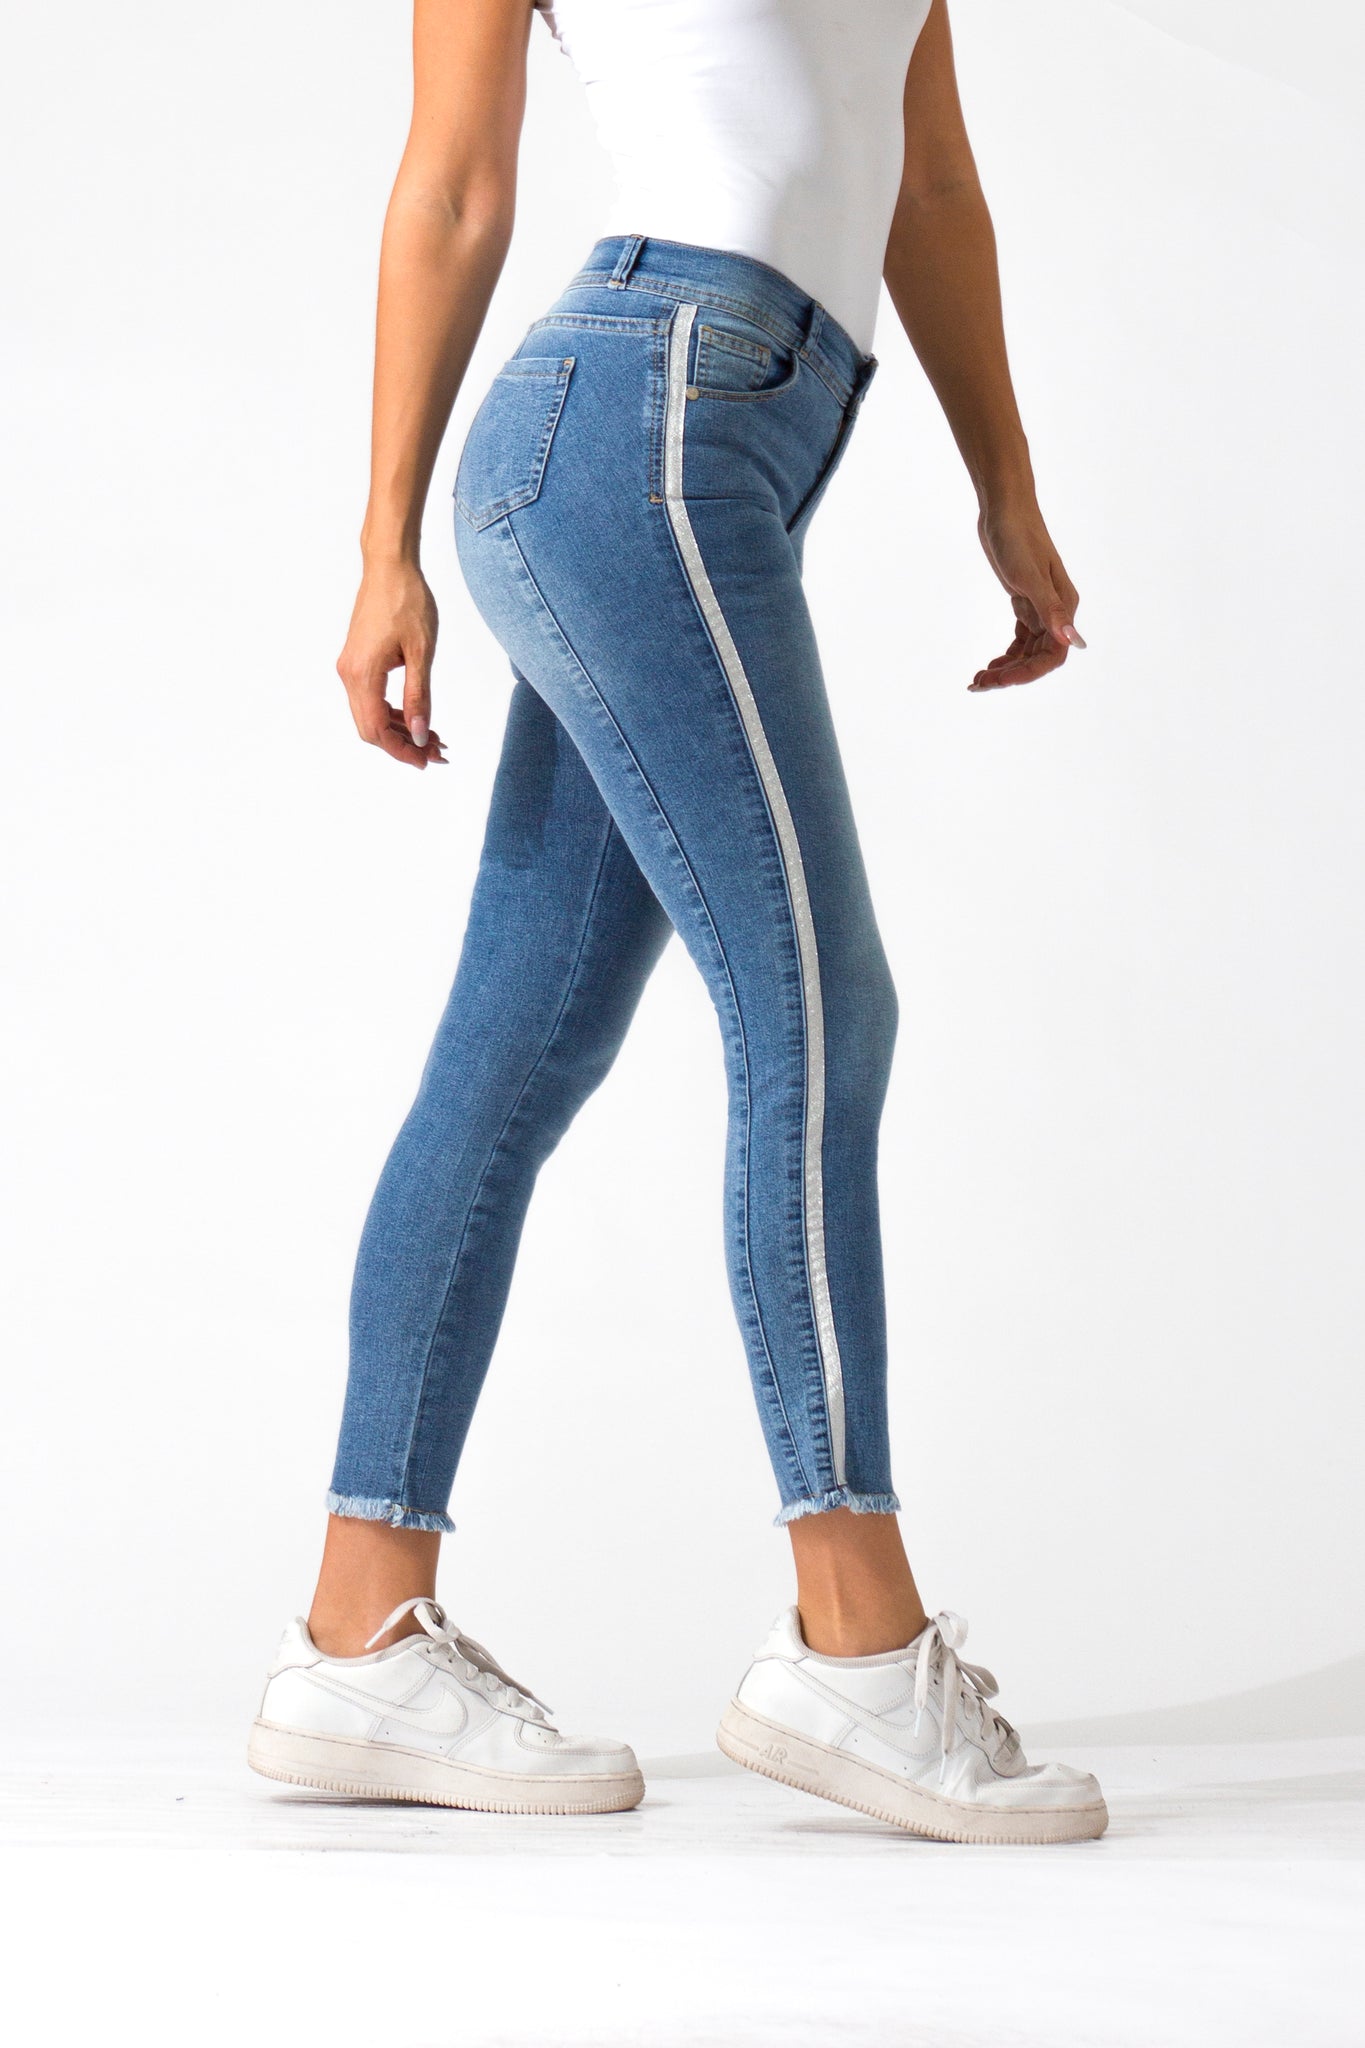 OHPOMP!® Cintura Media Skinny Jeans Ankle Azul Claro D1281